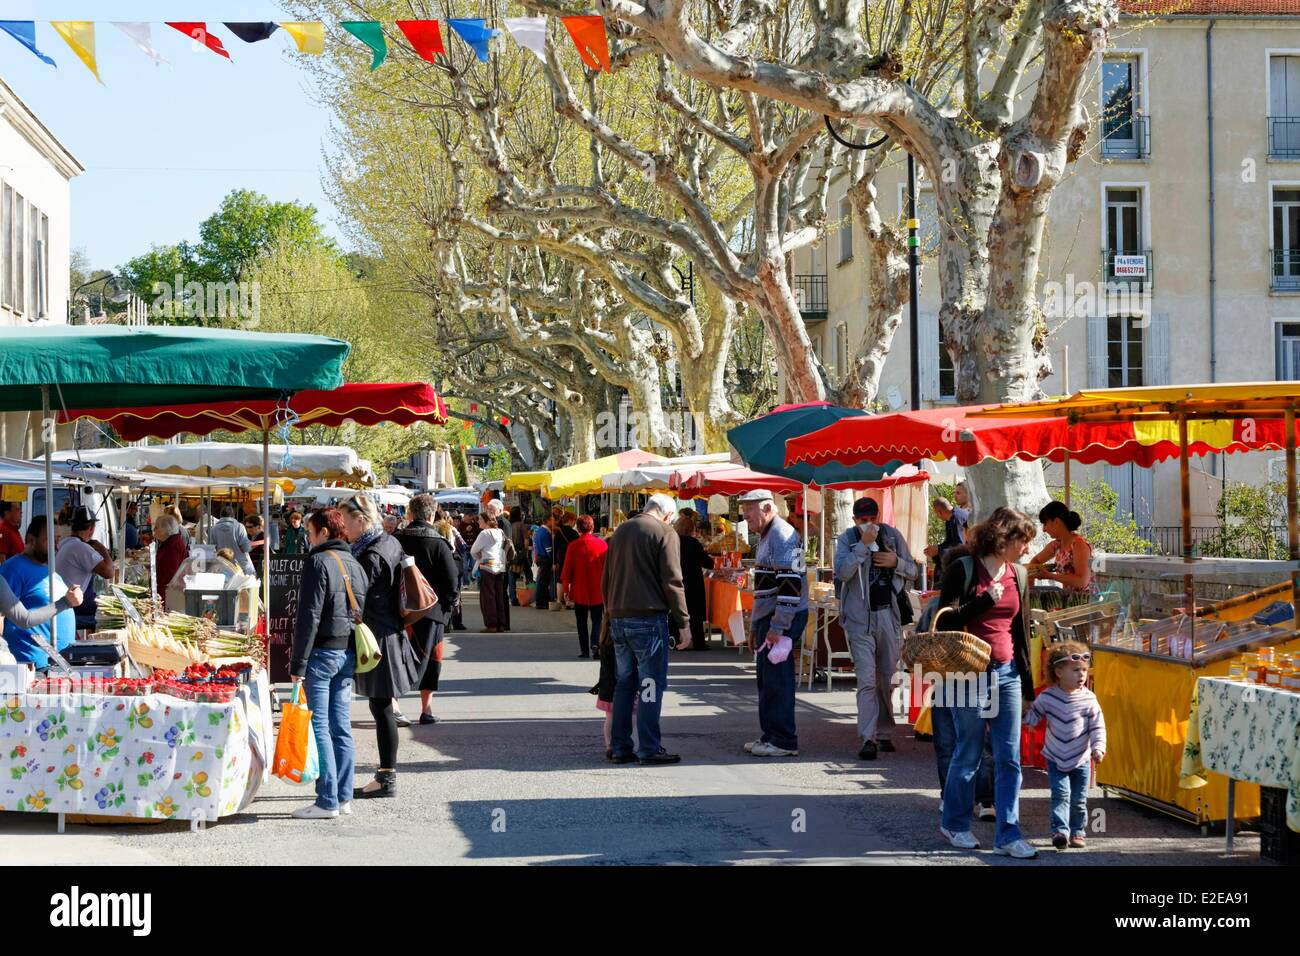 France, Gard, Saint Jean du Gard, market day Stock Photo - Alamy